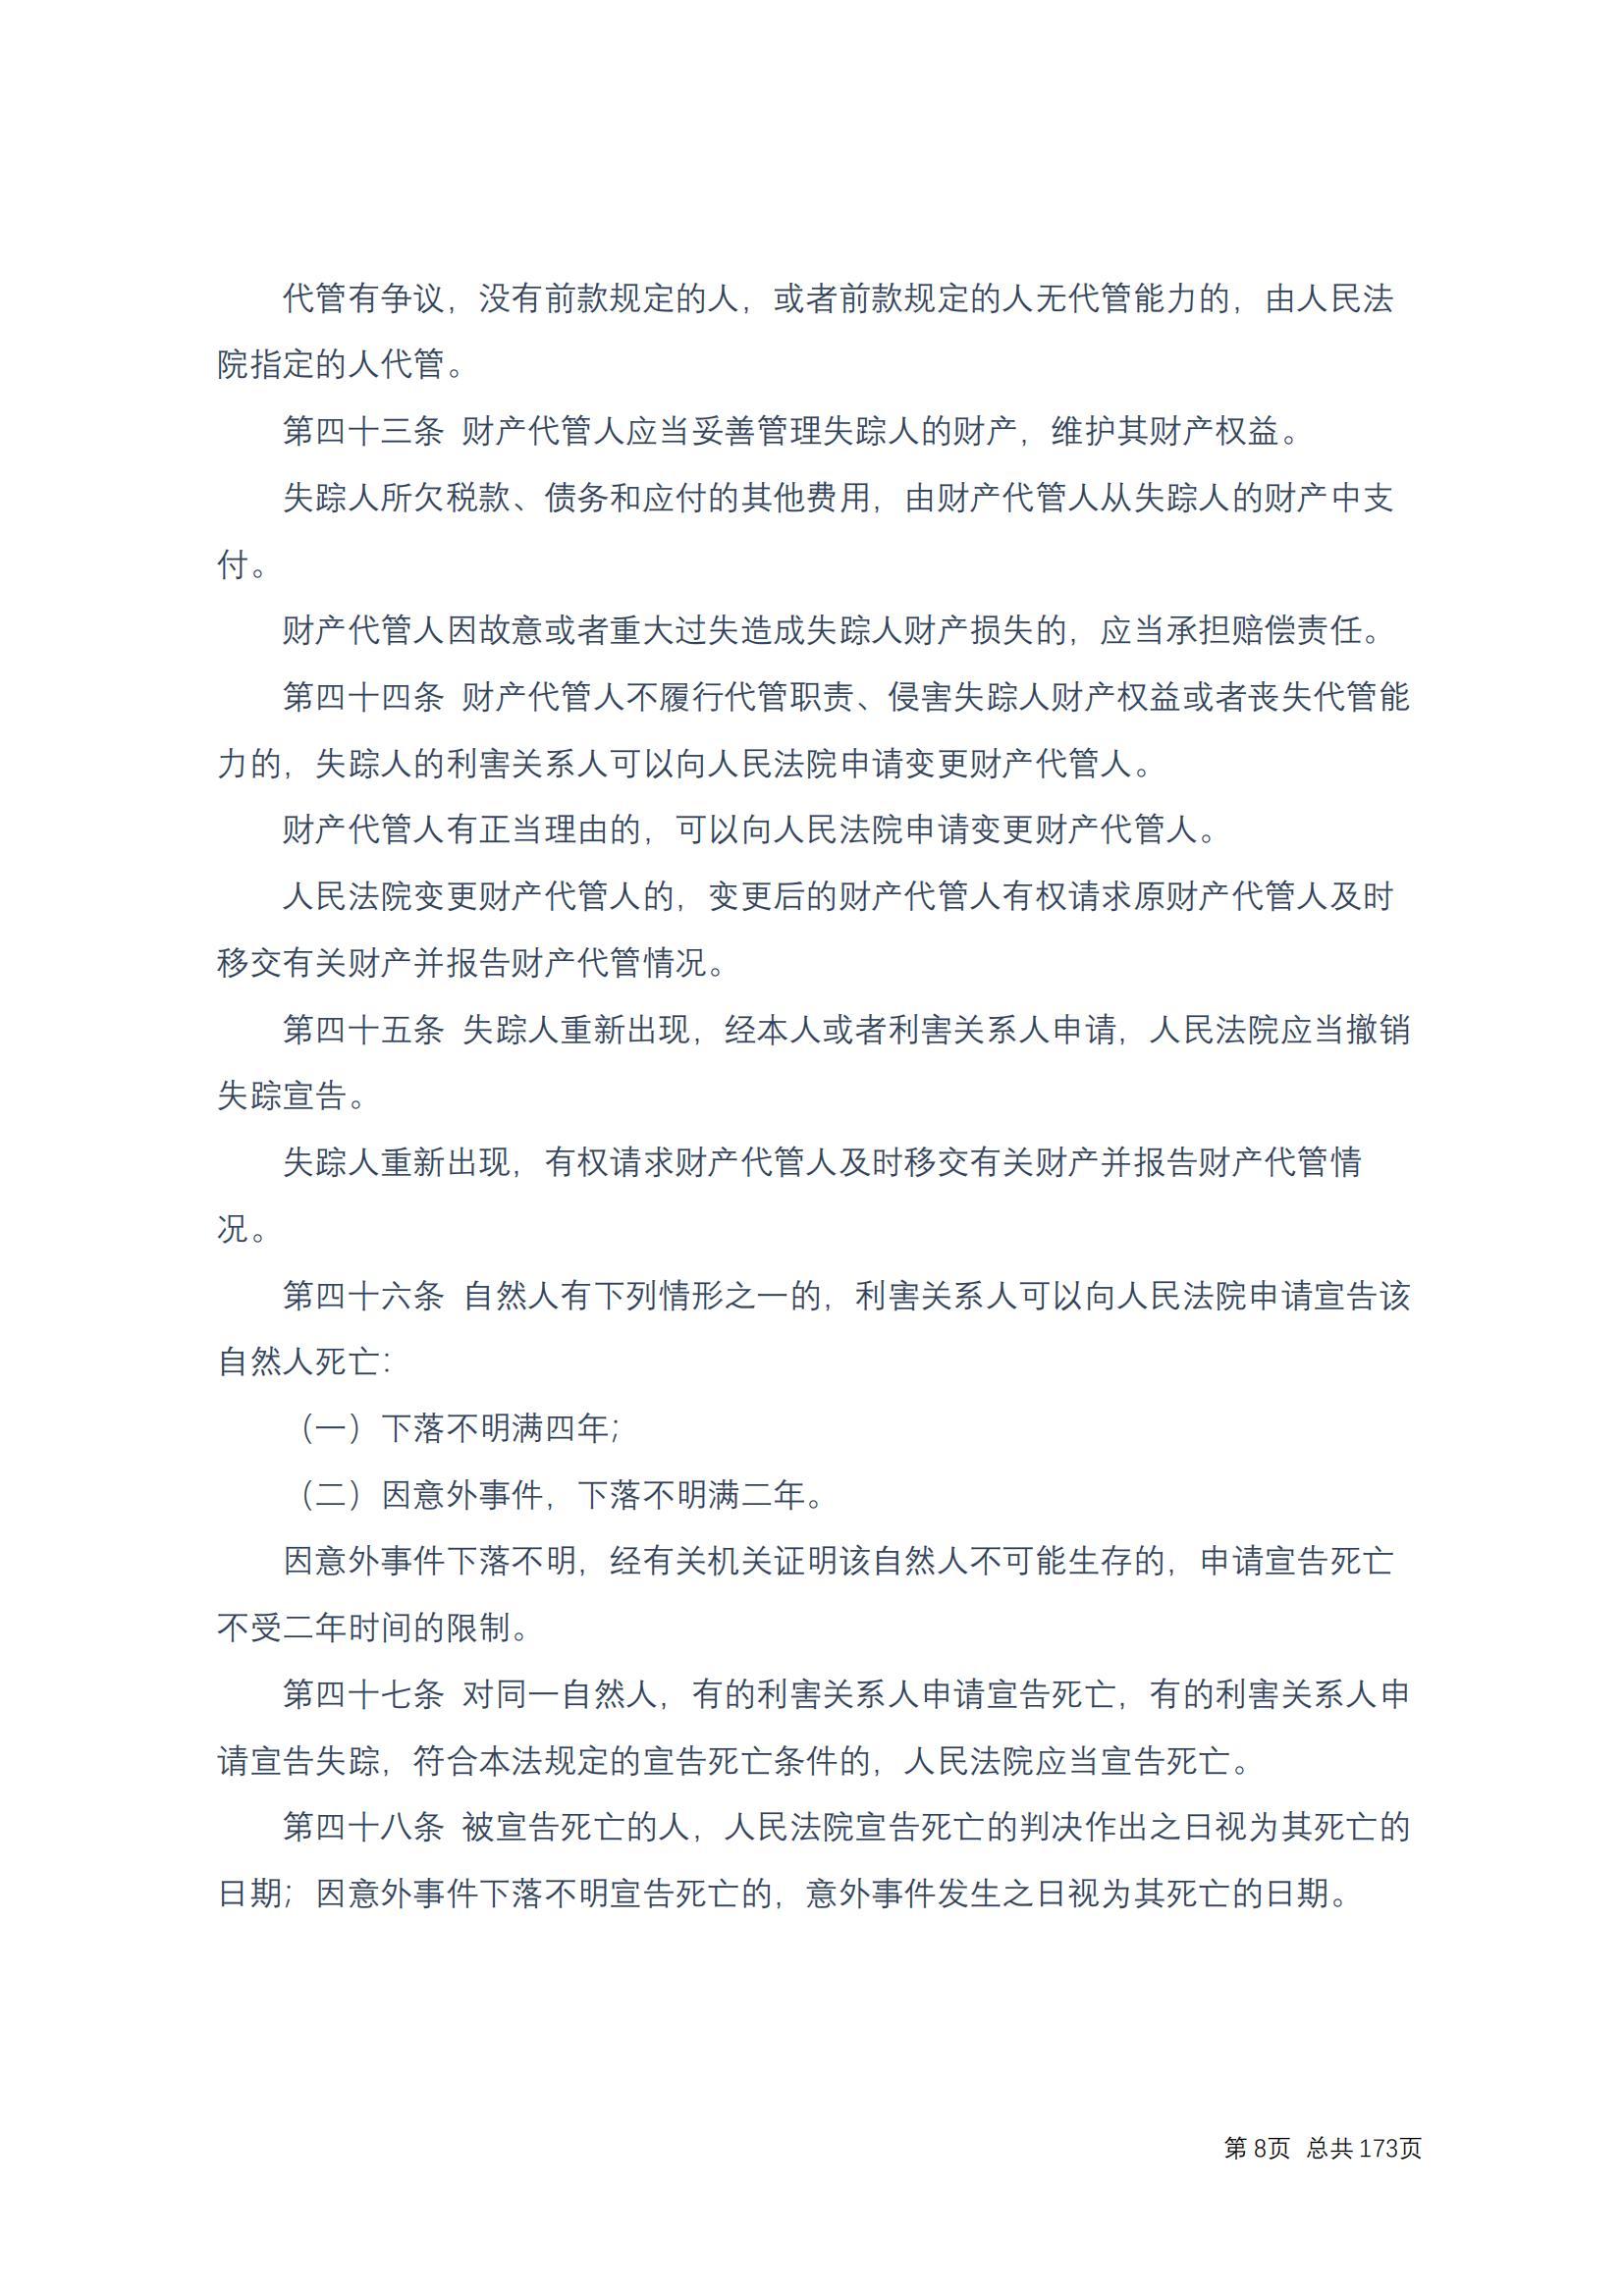 中华人民共和国民法典 修改过_07